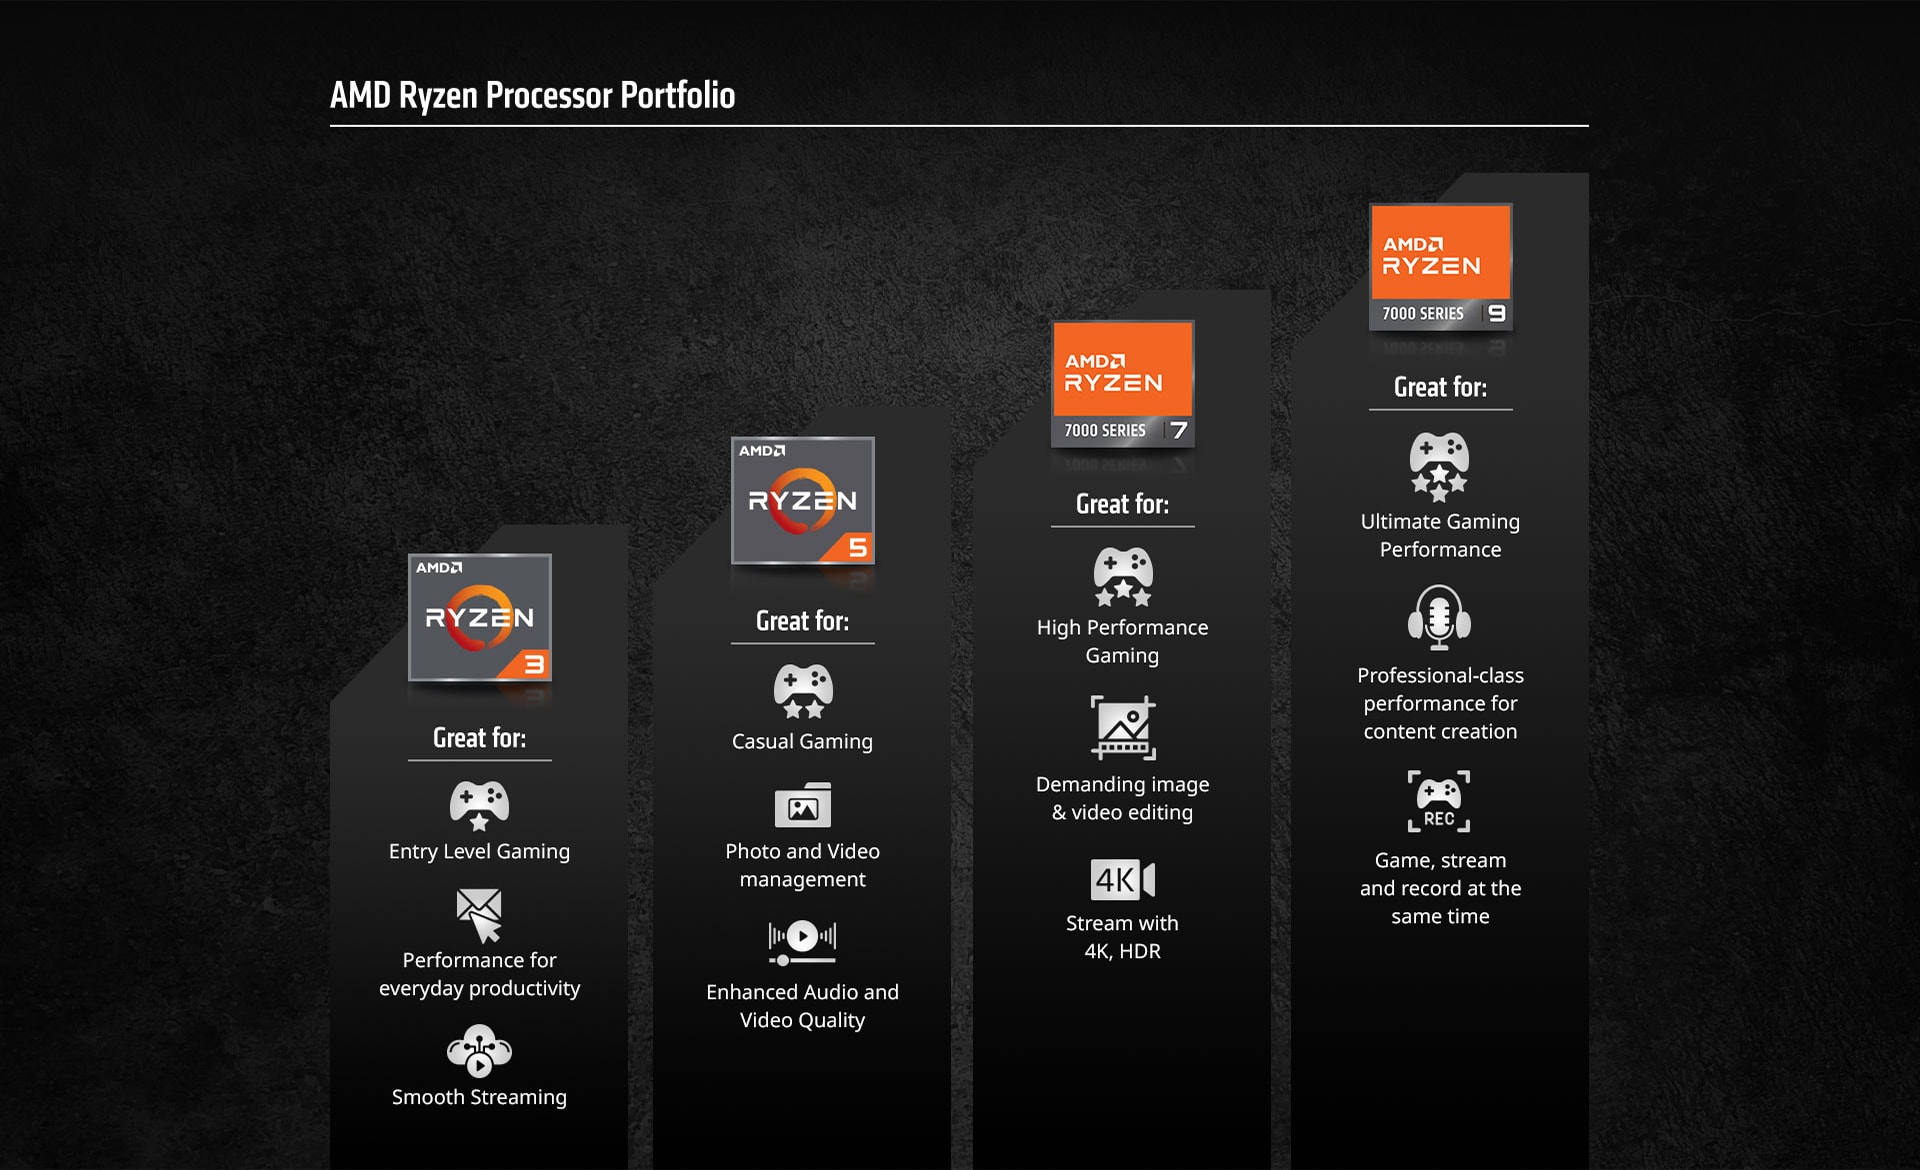 AMD Ryzen specifications